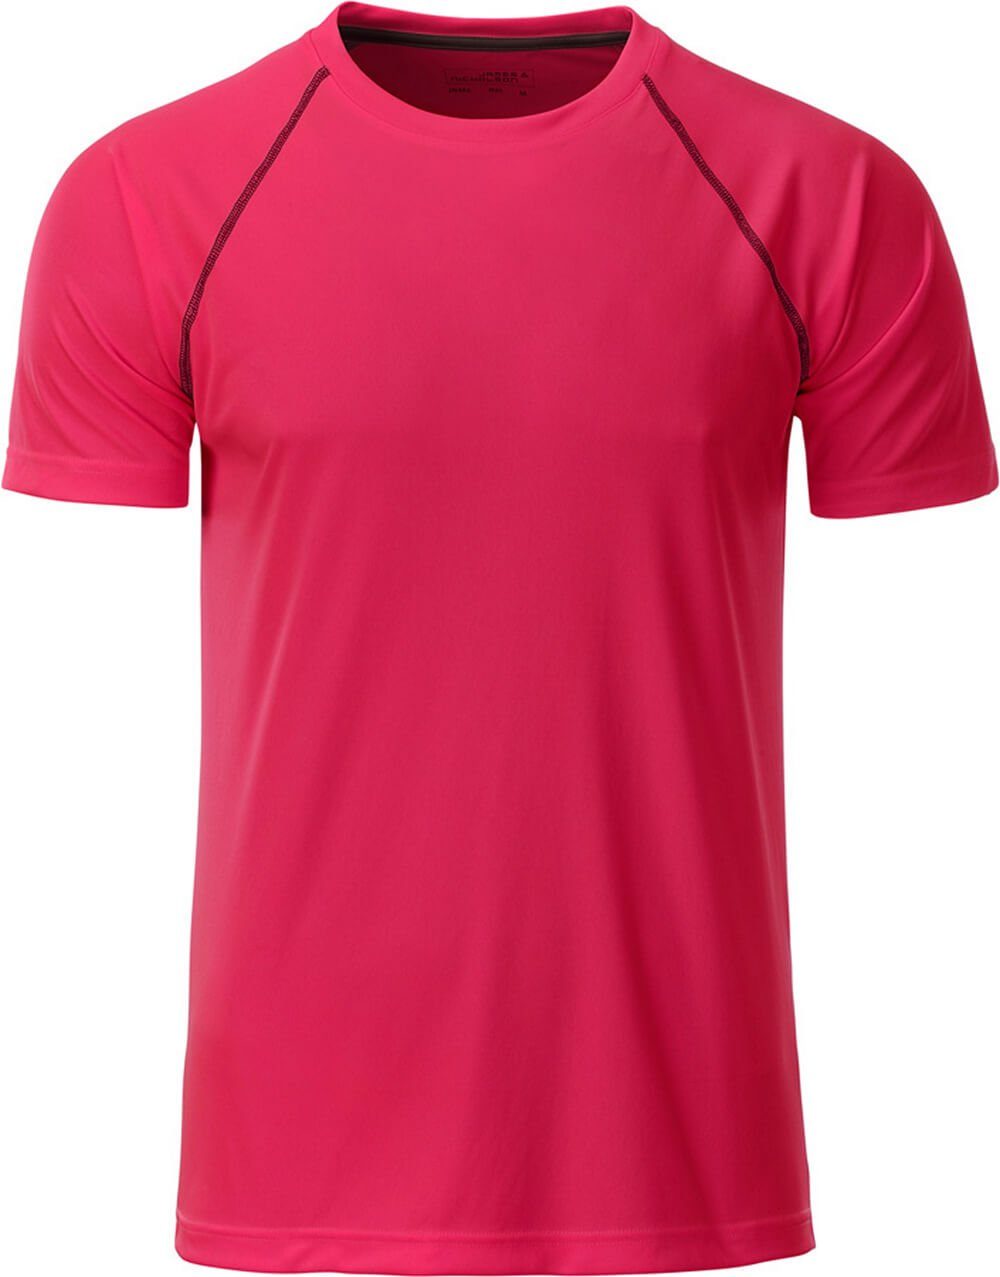 schnell JN pink/titan Nicholson & James 496 & trocknend James Nicholson Funktionsshirt bright Funktions-Shirt Herren